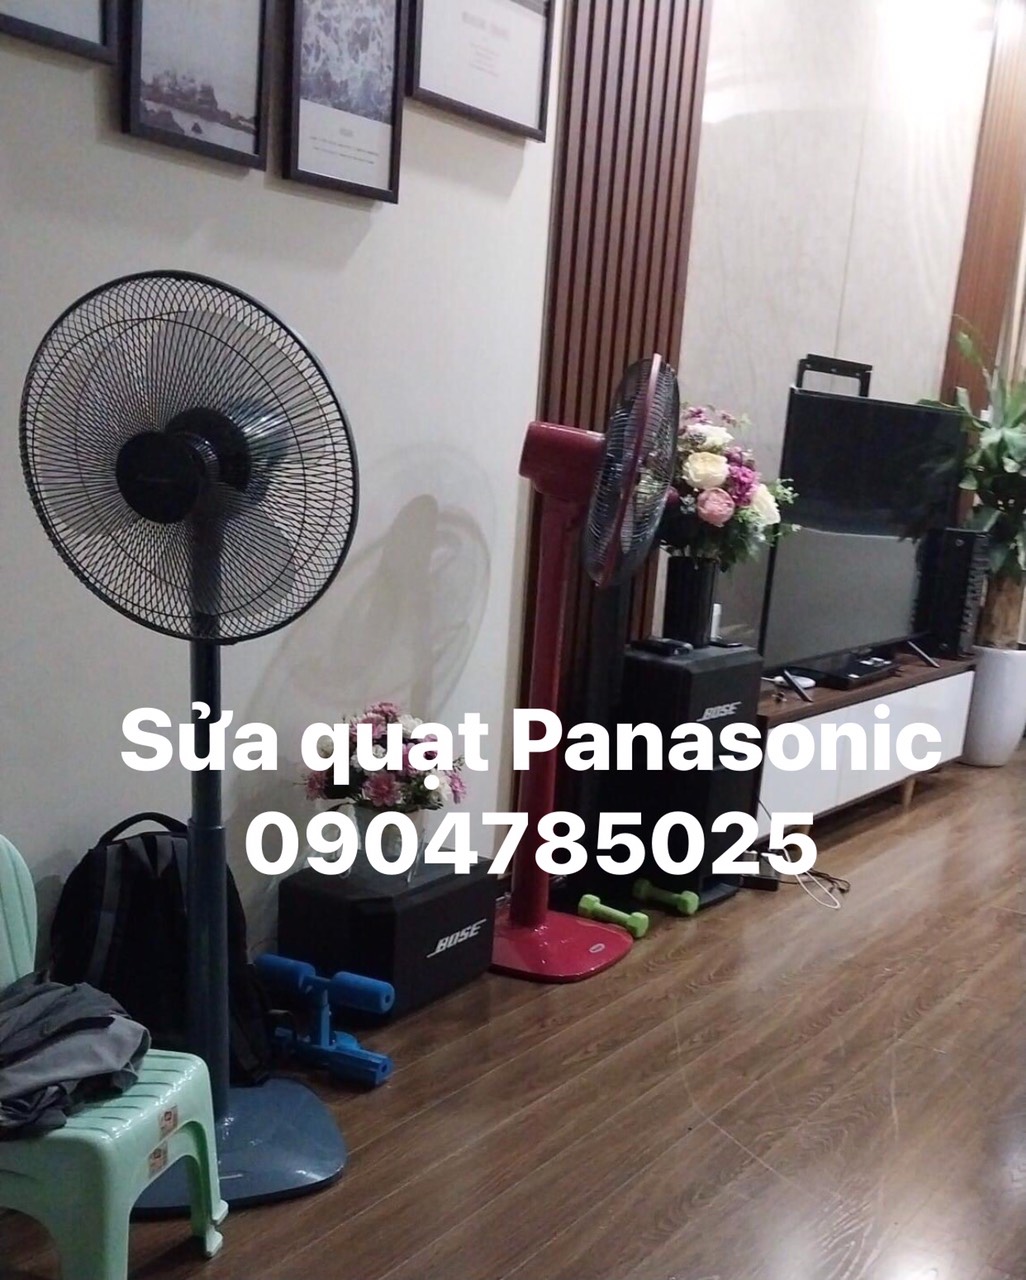 Cơ sở sửa chữa quạt Panasonic tại nhà Hà Nội